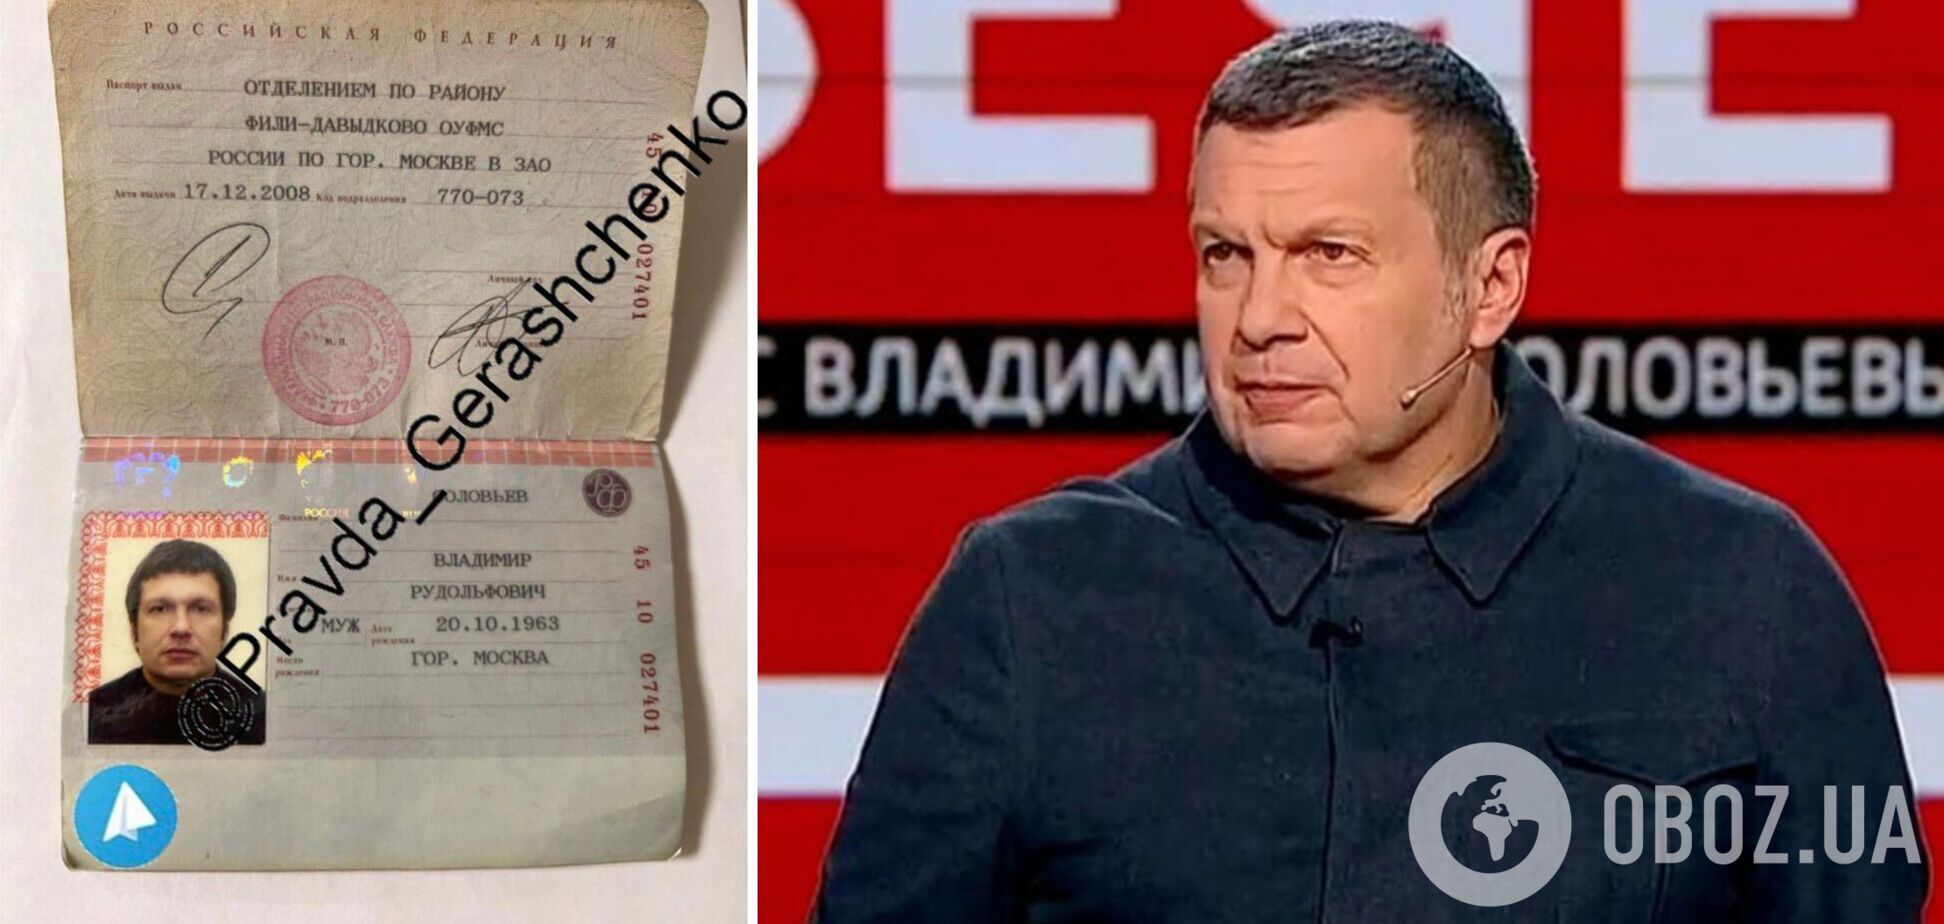 Геращенко оголосив нагороду за злам акаунту пропагандиста Соловйова: вже вдалося дістати фото його паспорта